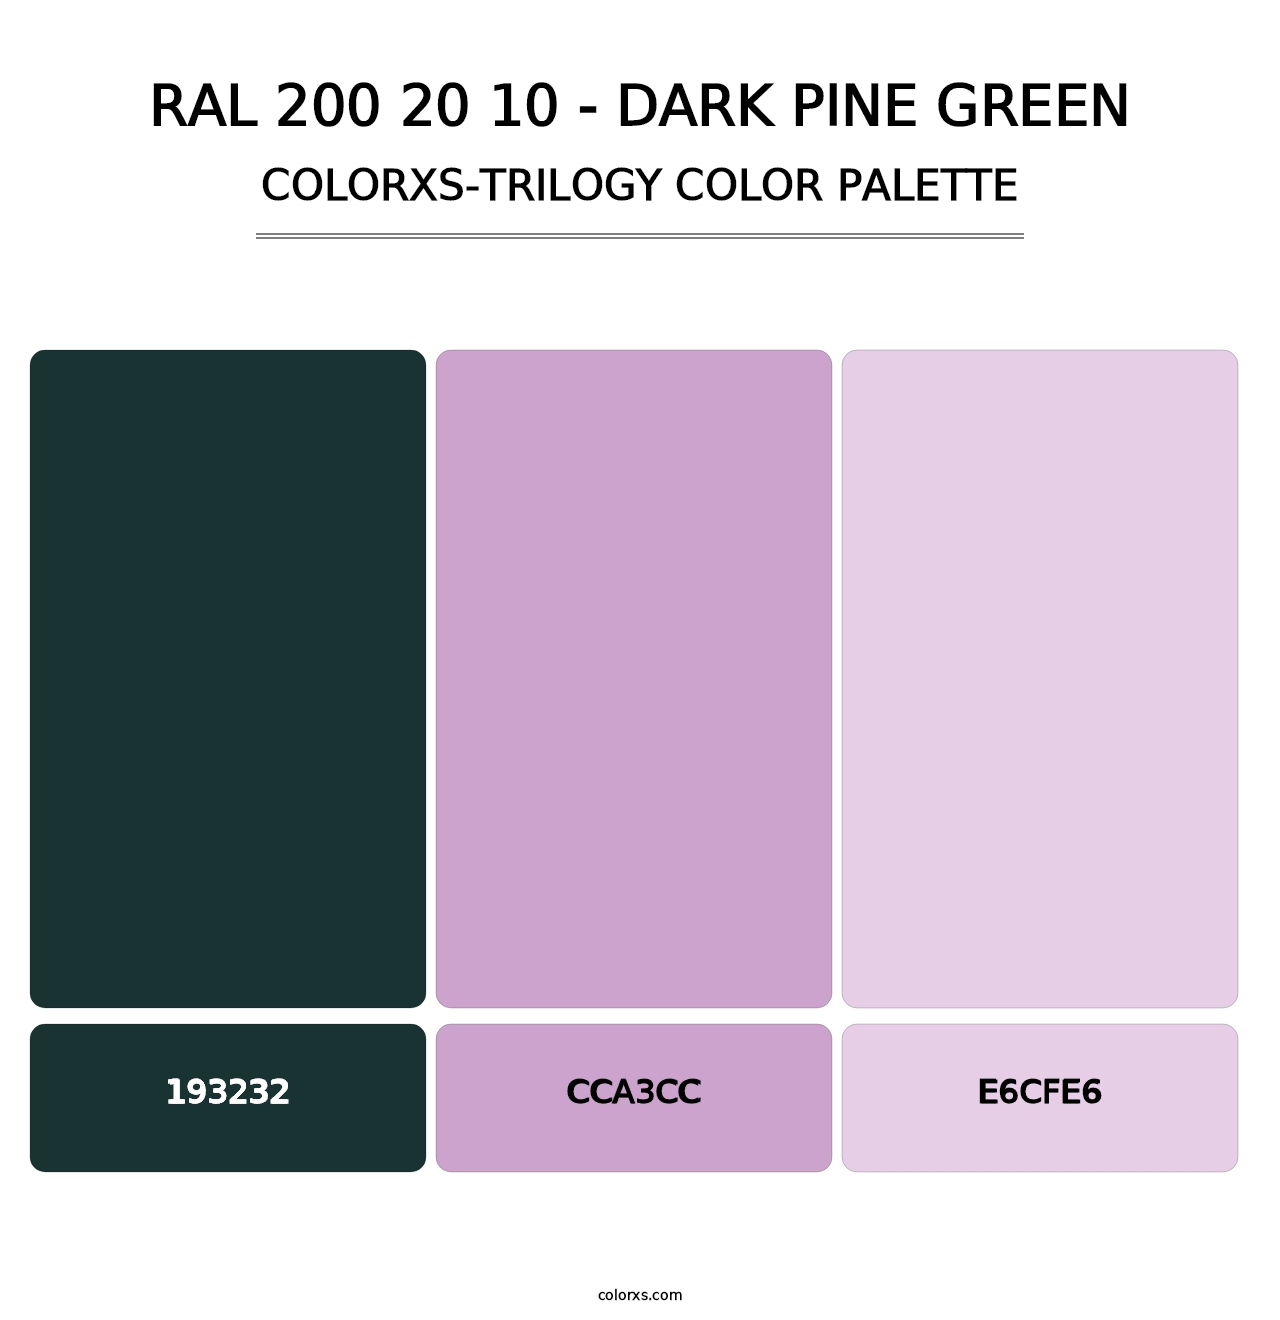 RAL 200 20 10 - Dark Pine Green - Colorxs Trilogy Palette